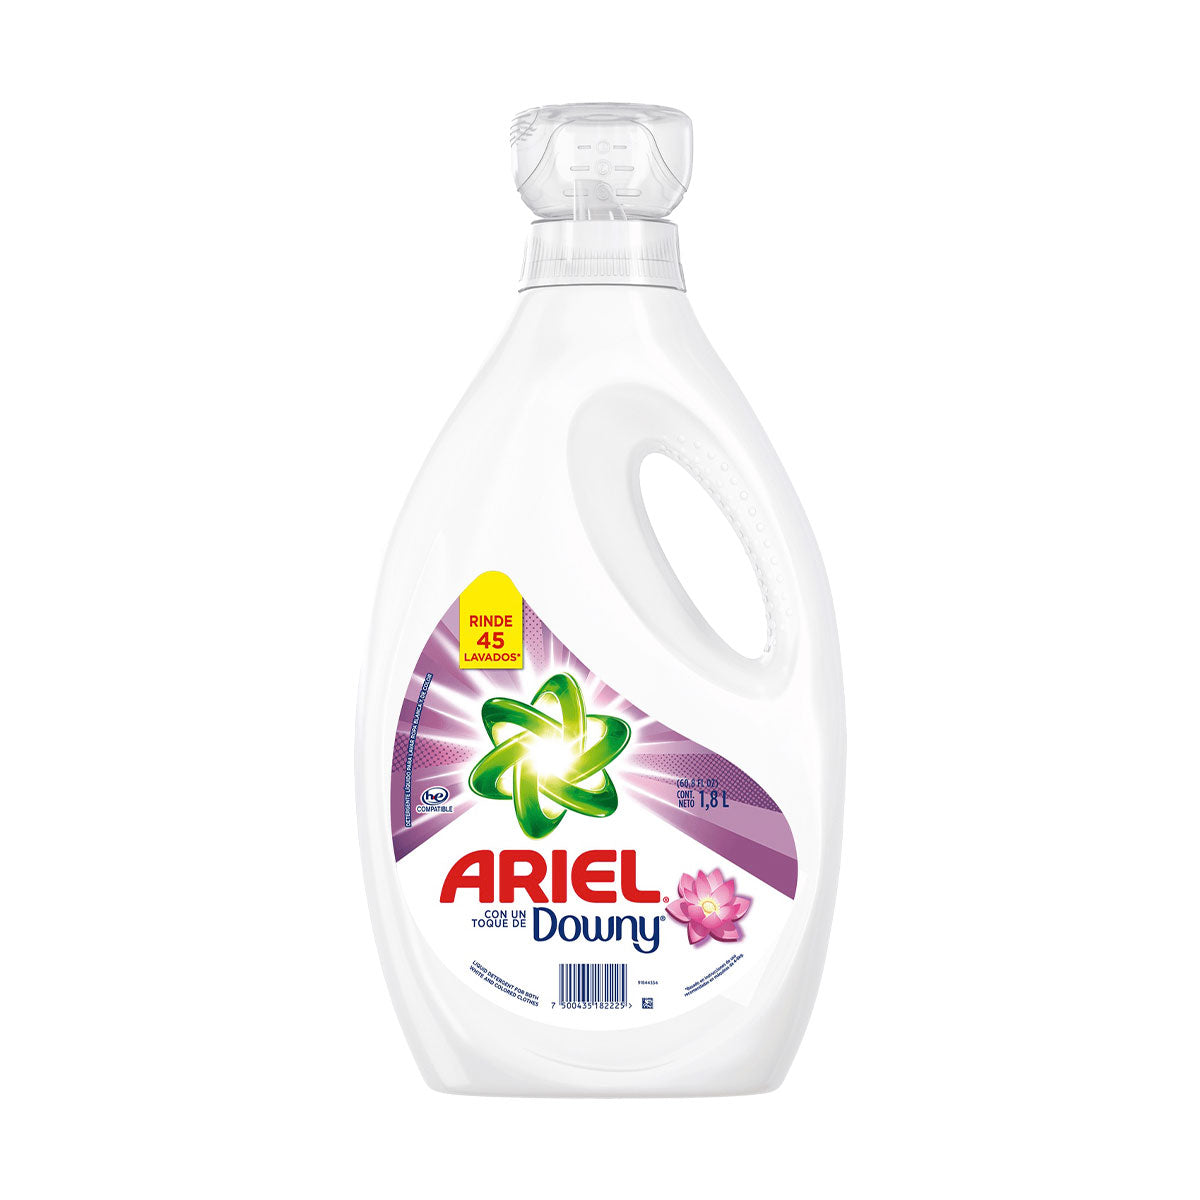 Detergente líquido Ariel con un Toque de Downy 1,8 lts